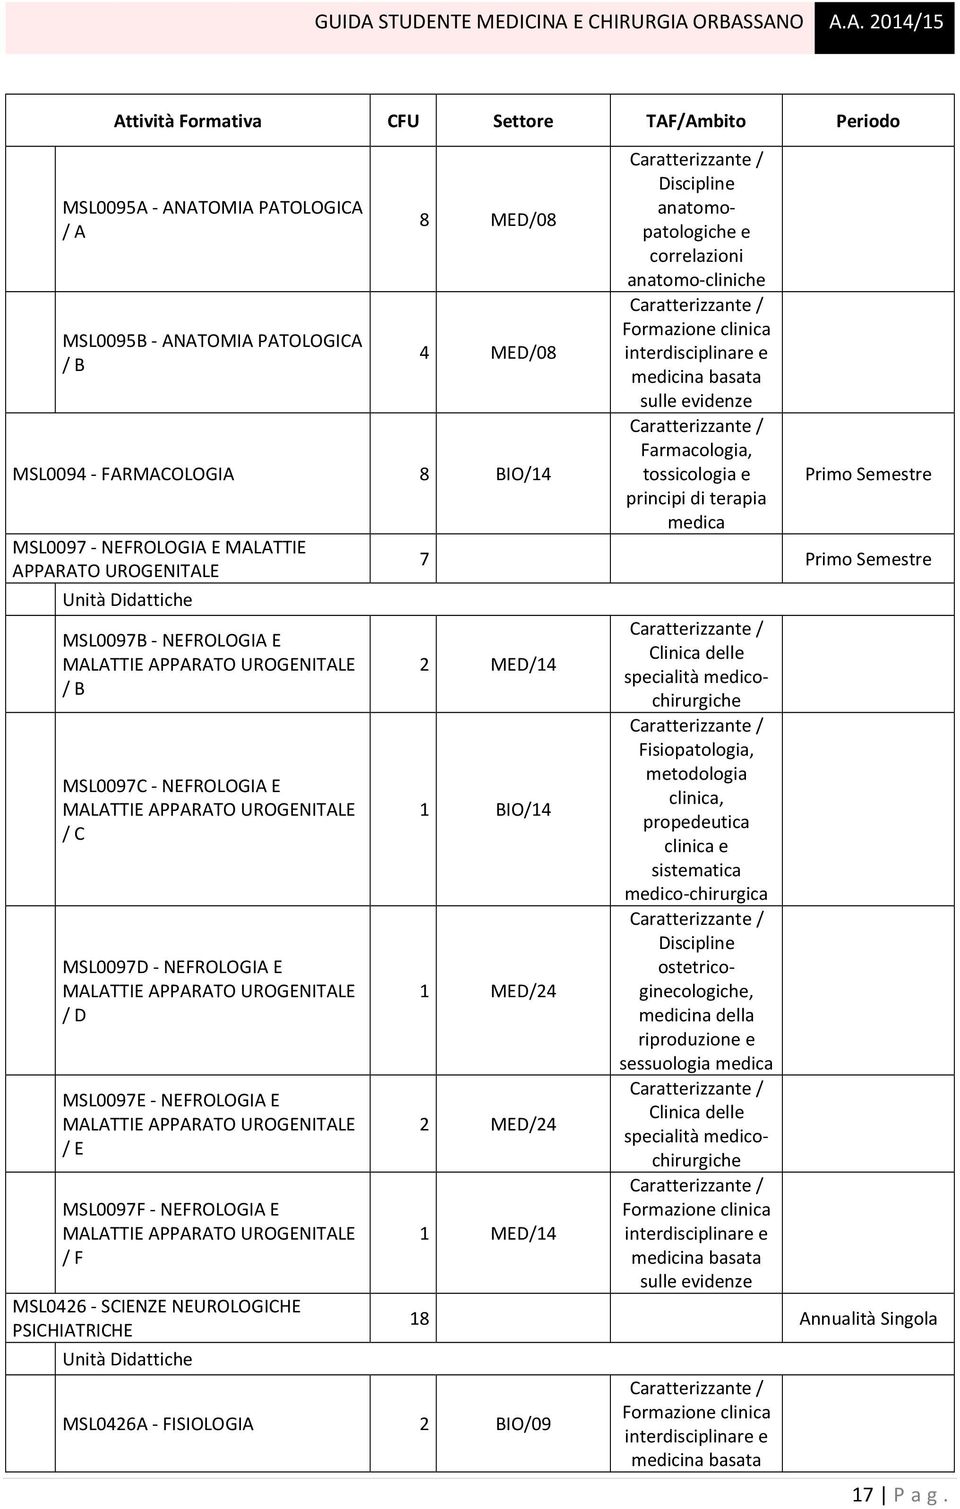 UROGENITALE / E MSL0097F - NEFROLOGIA E MALATTIE APPARATO UROGENITALE / F MSL0426 - SCIENZE NEUROLOGICHE PSICHIATRICHE Discipline anatomopatologiche e correlazioni anatomo-cliniche Formazione clinica